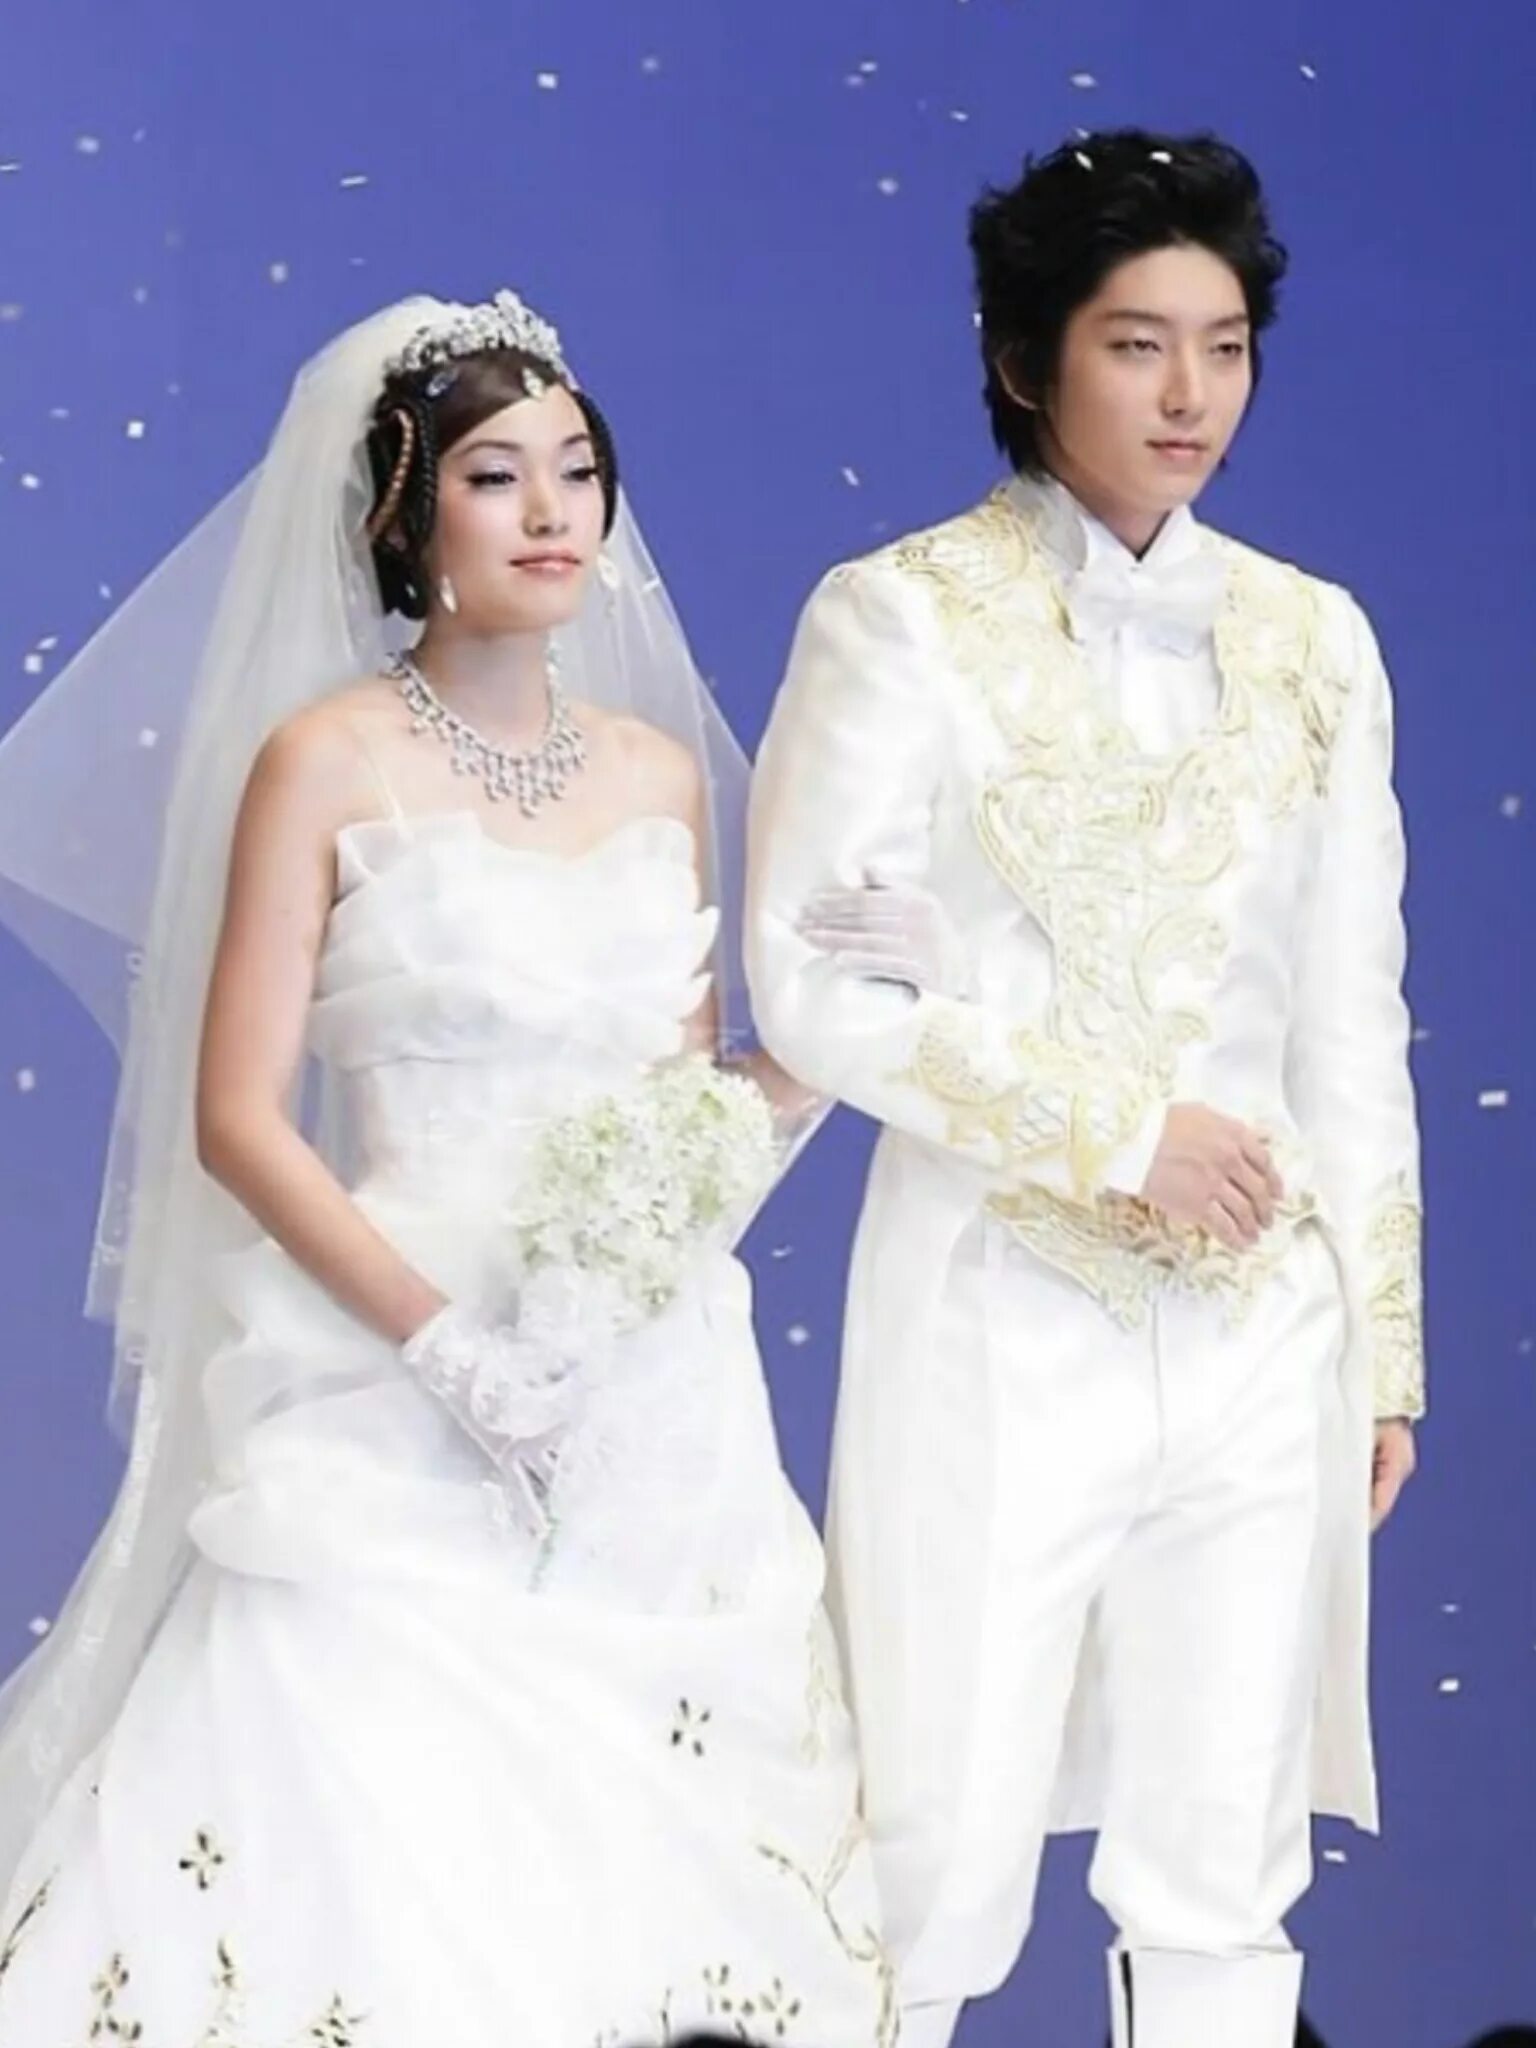 Джун ги дети. Ли Джун ки. Ли Джун ки и его жена. Ли Джун ки и его жена 2017. Ли Джун ги женат.